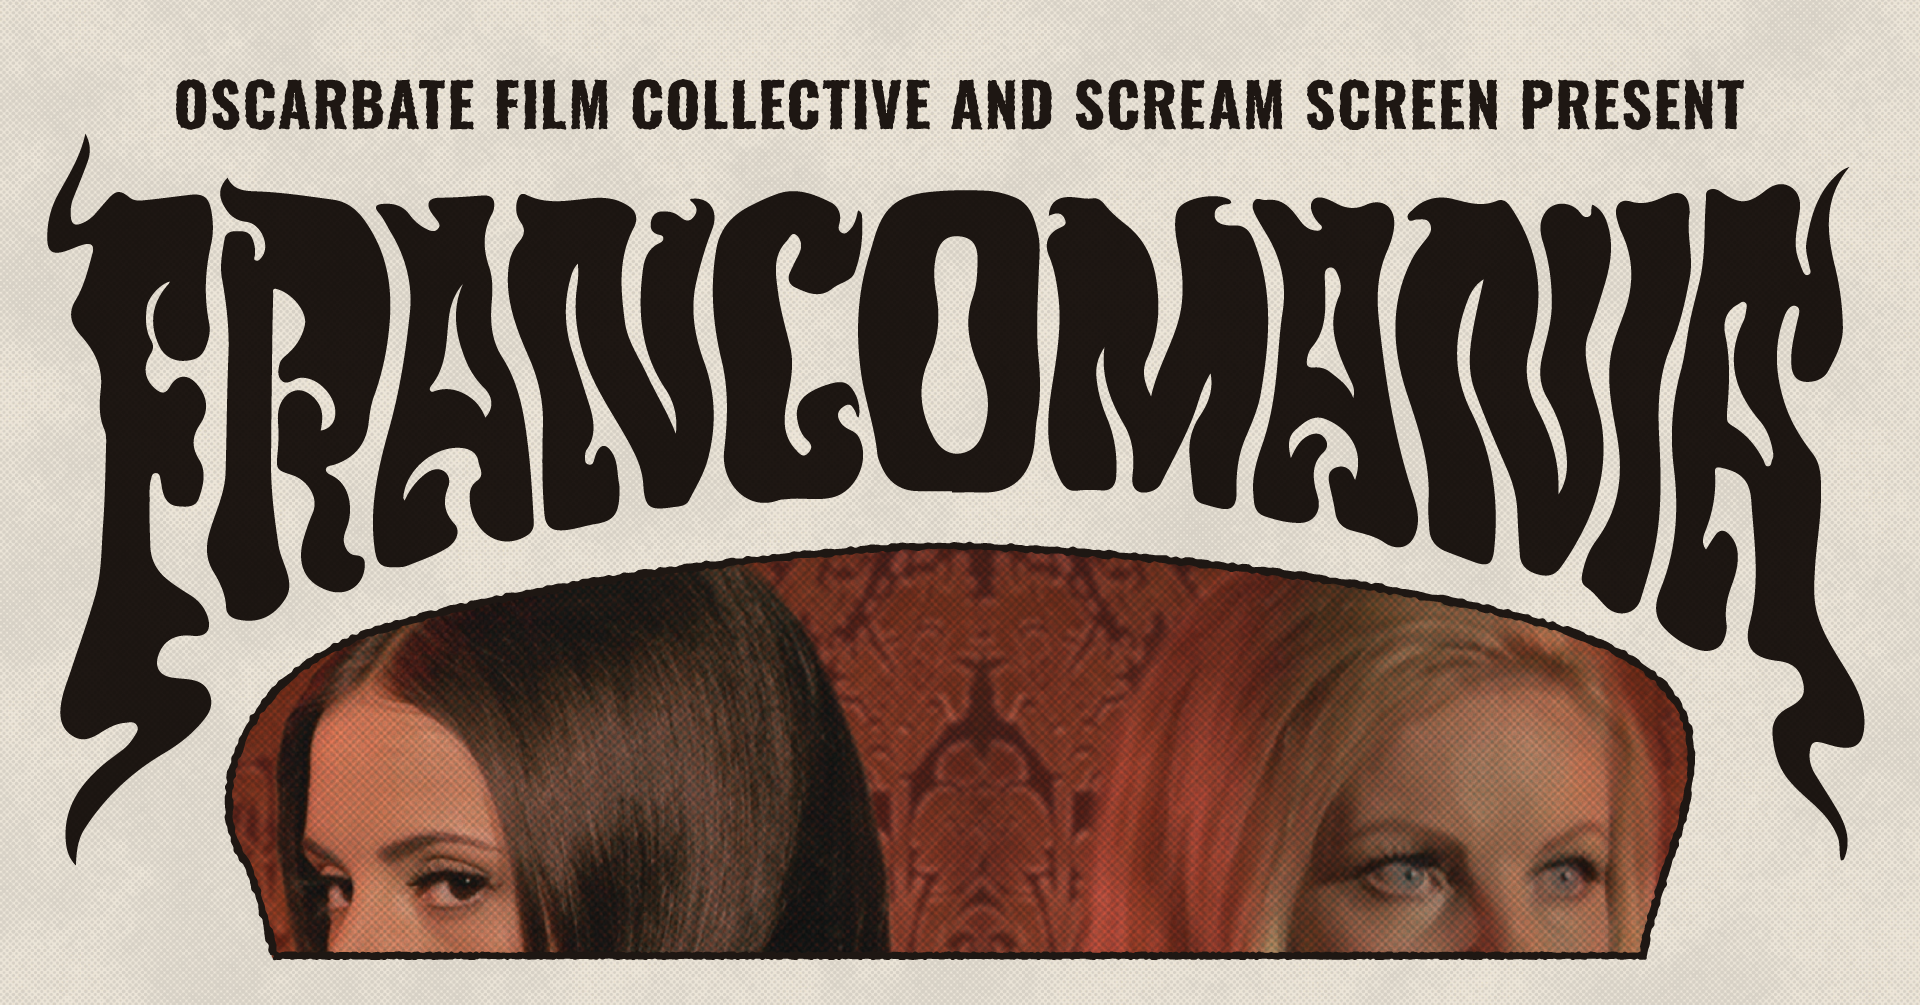 Scream Screen & Oscarbate Film Collective present: FRANCOMANIA!